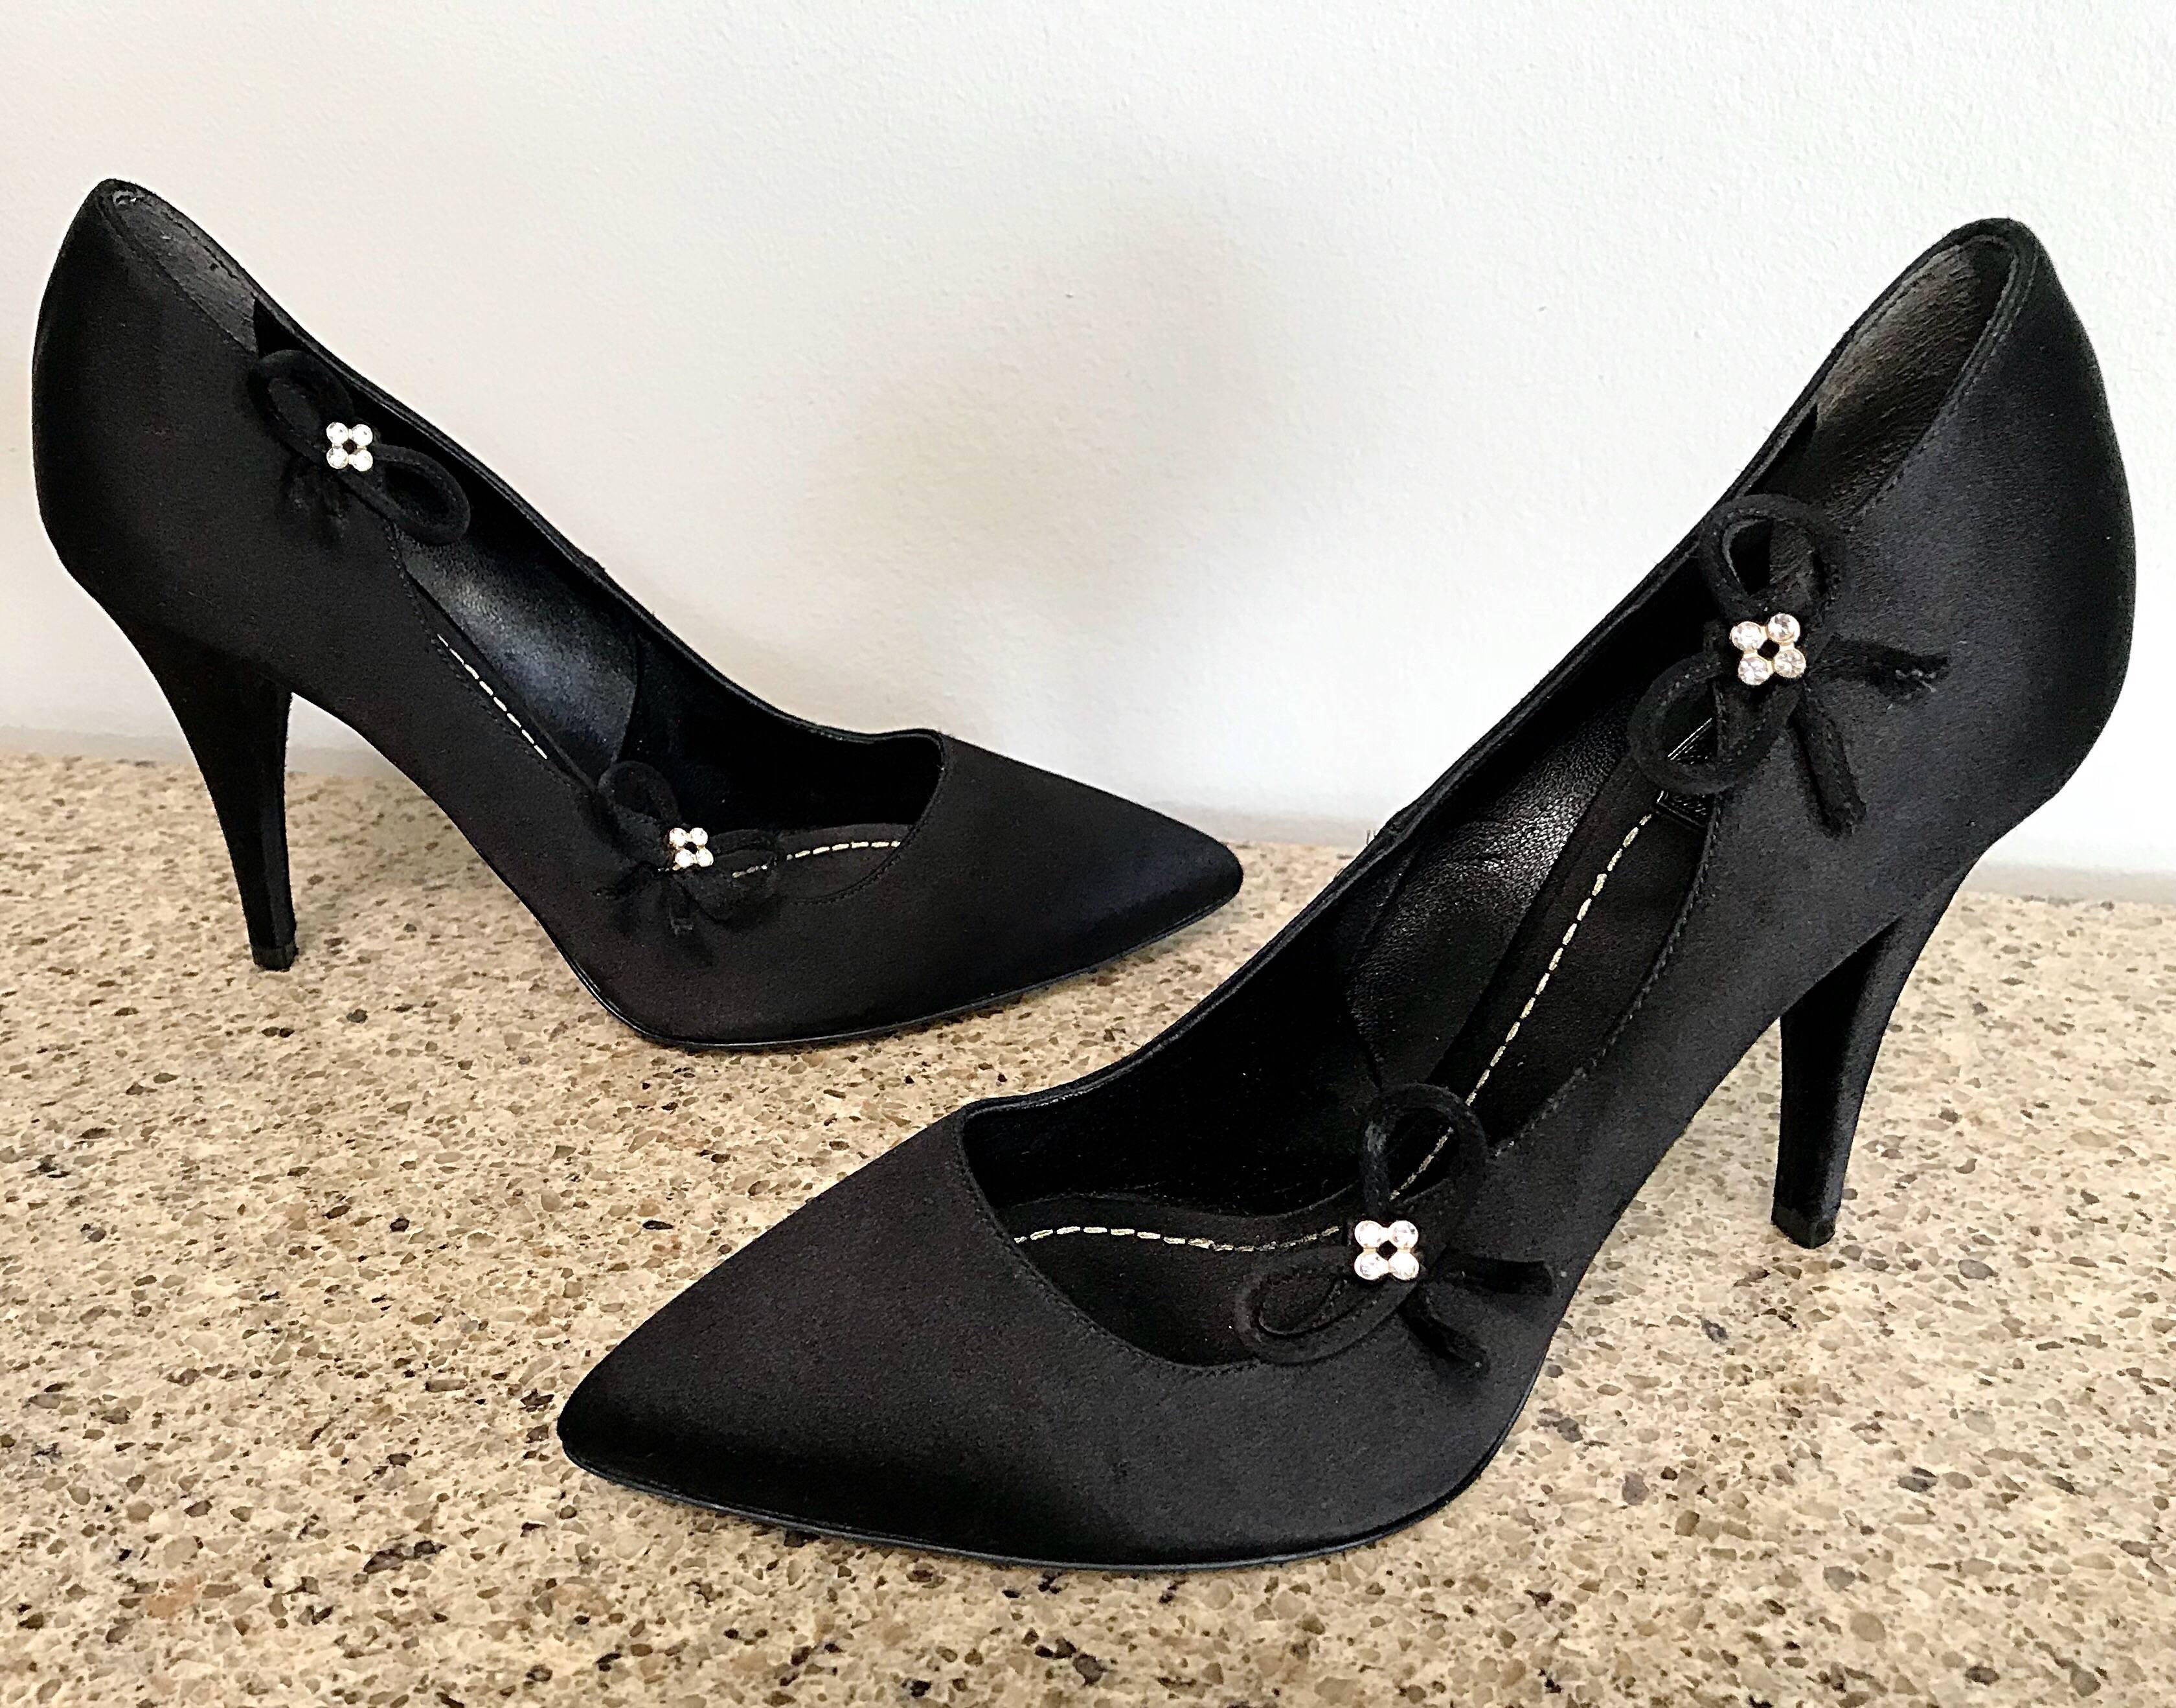 Magnifiques escarpins CHRISTIAN DIOR by JOHN GALLIANO en satin de soie noir ! Ces chaussures offrent bien plus qu'une simple chaussure noire de base ! Eleg est doté d'un élégant bout pointu. Détails de fleurs en strass sur chaque chaussure. Idéal